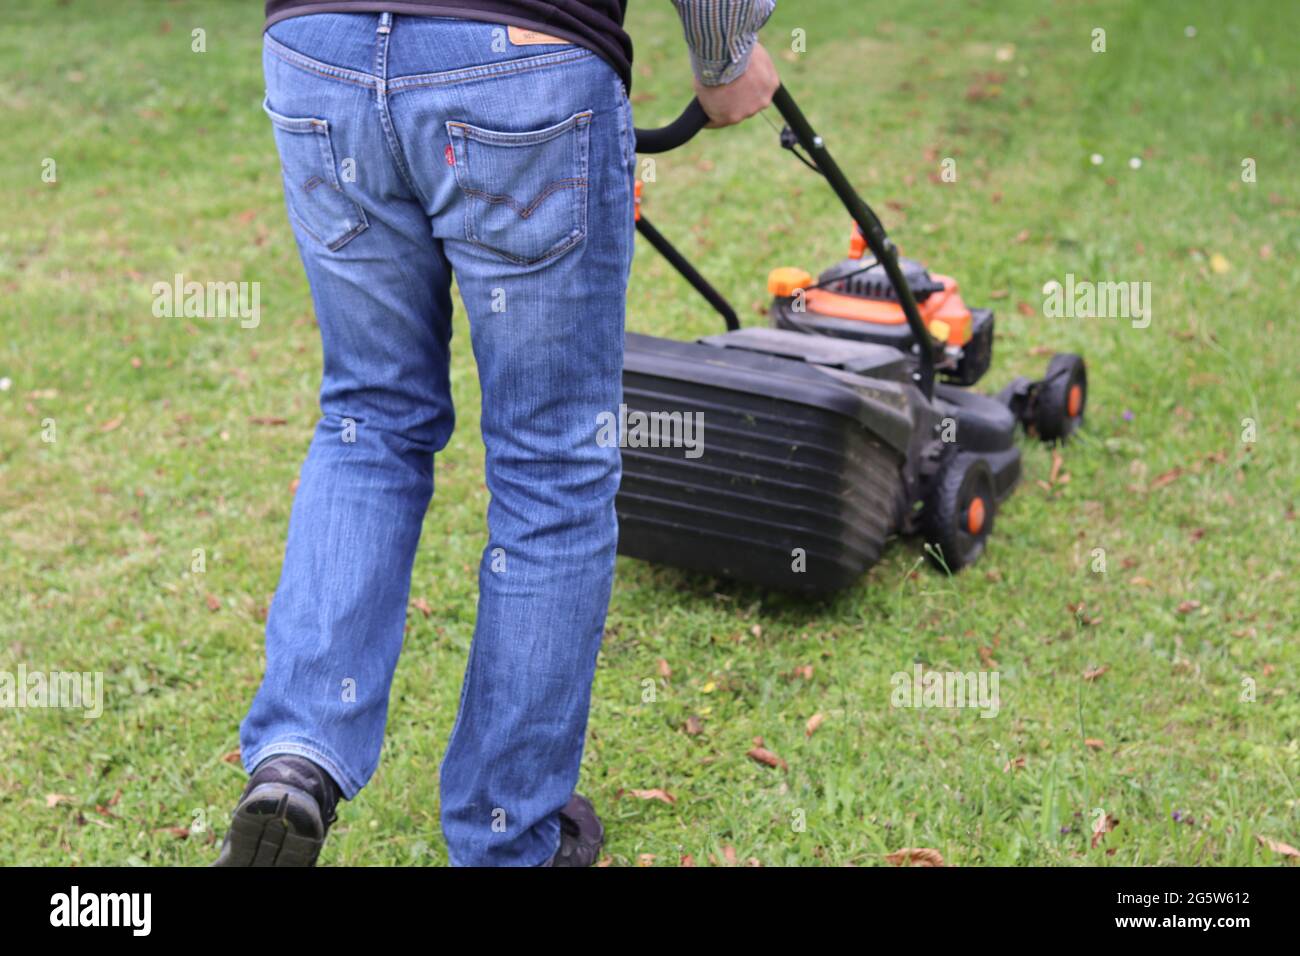 Mann in blauer Jeans mäht grünen Rasen mit einem Rasenmäher. Im Sommer Gras schneiden. Besitz eines kleinen Unternehmens für die Gartenarbeit. Stockfoto